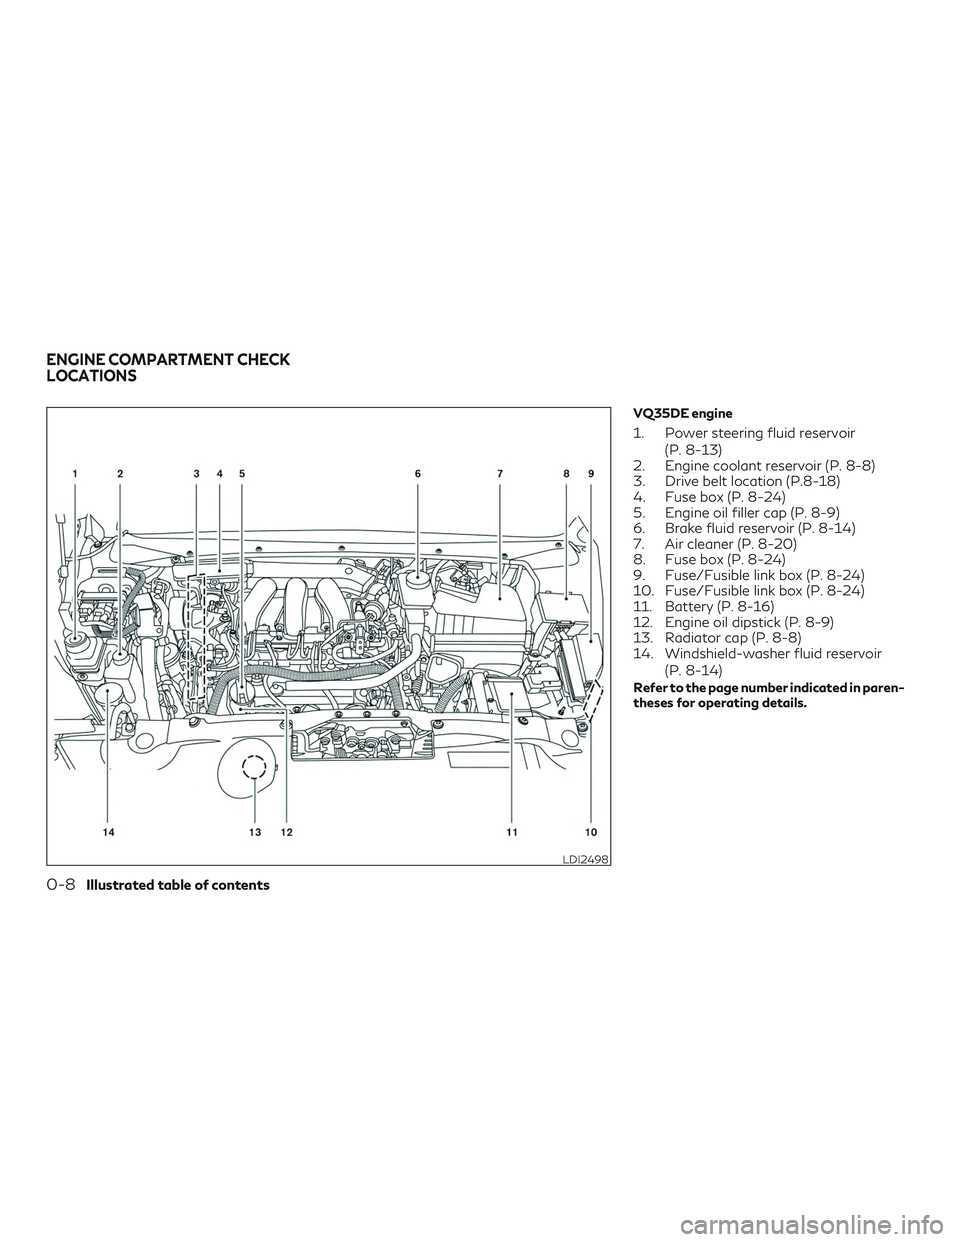 INFINITI QX60 2018  Owners Manual VQ35DE engine
1. Power steering fluid reservoir(P. 8-13)
2. Engine coolant reservoir (P. 8-8)
3. Drive belt location (P.8-18)
4. Fuse box (P. 8-24)
5. Engine oil filler cap (P. 8-9)
6. Brake fluid res